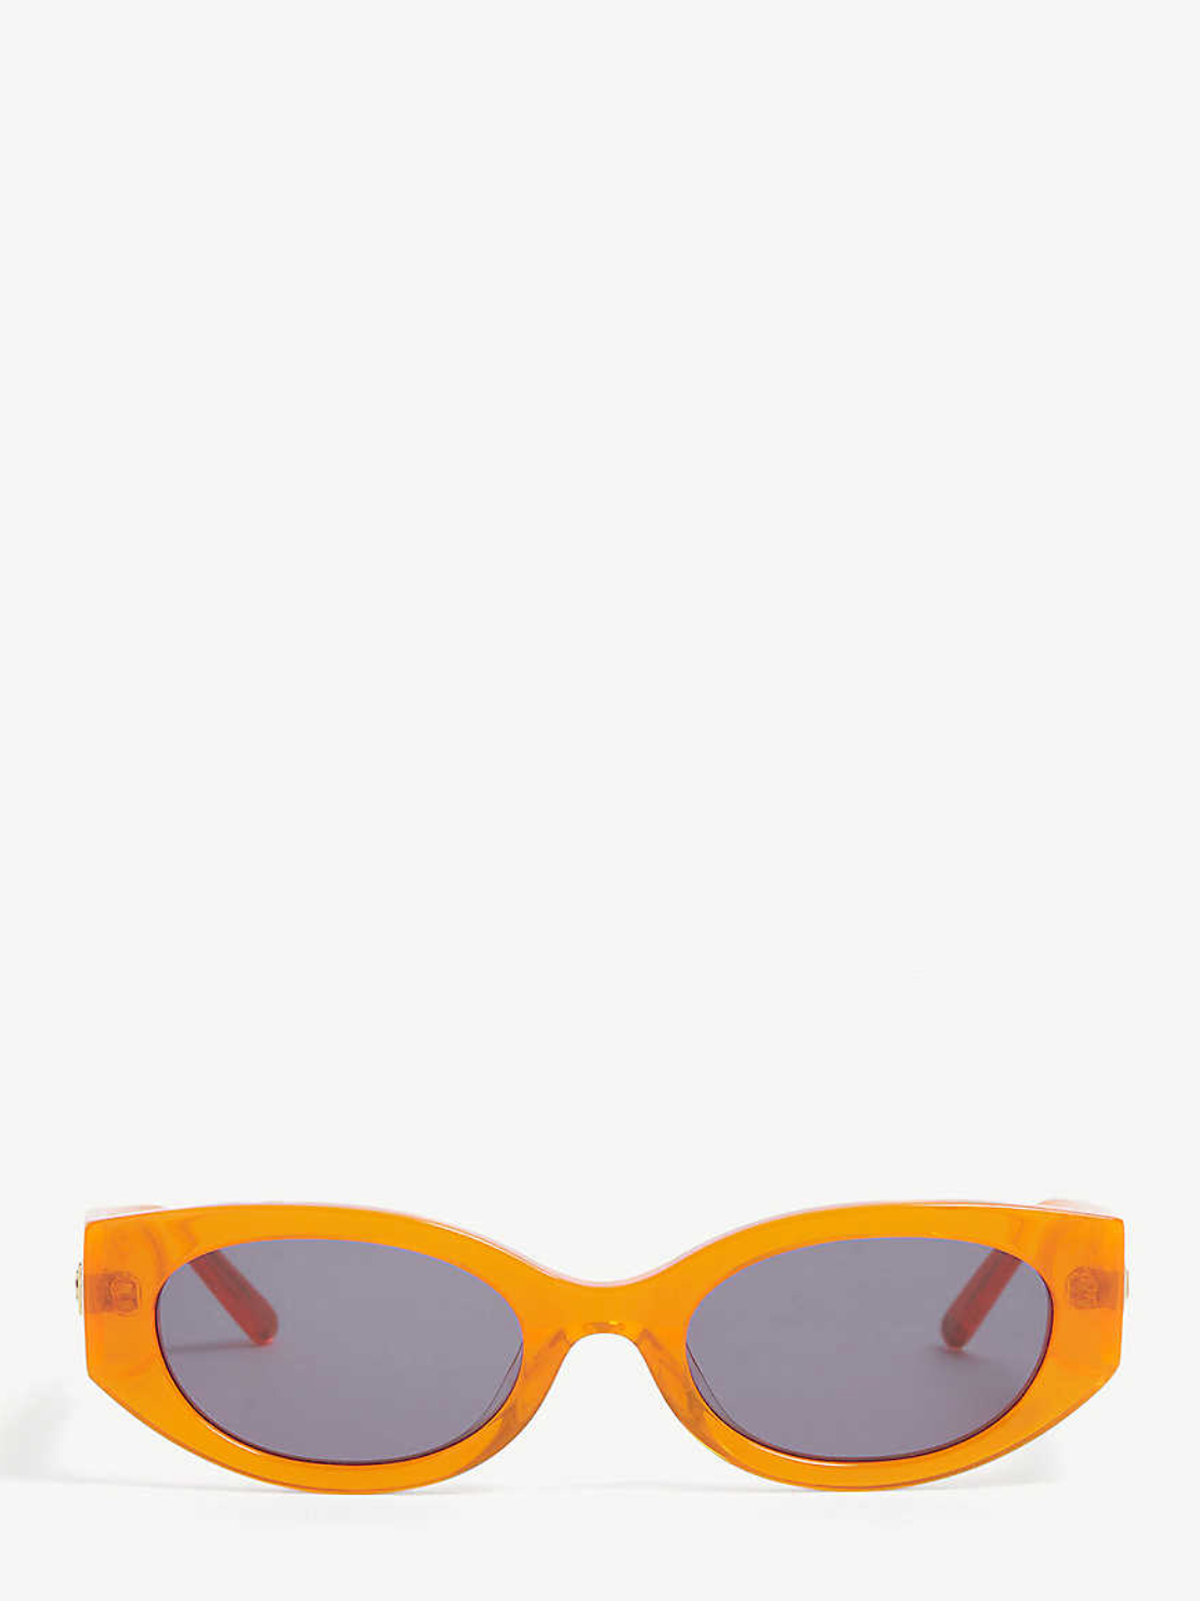 Hot Futures sunglasses